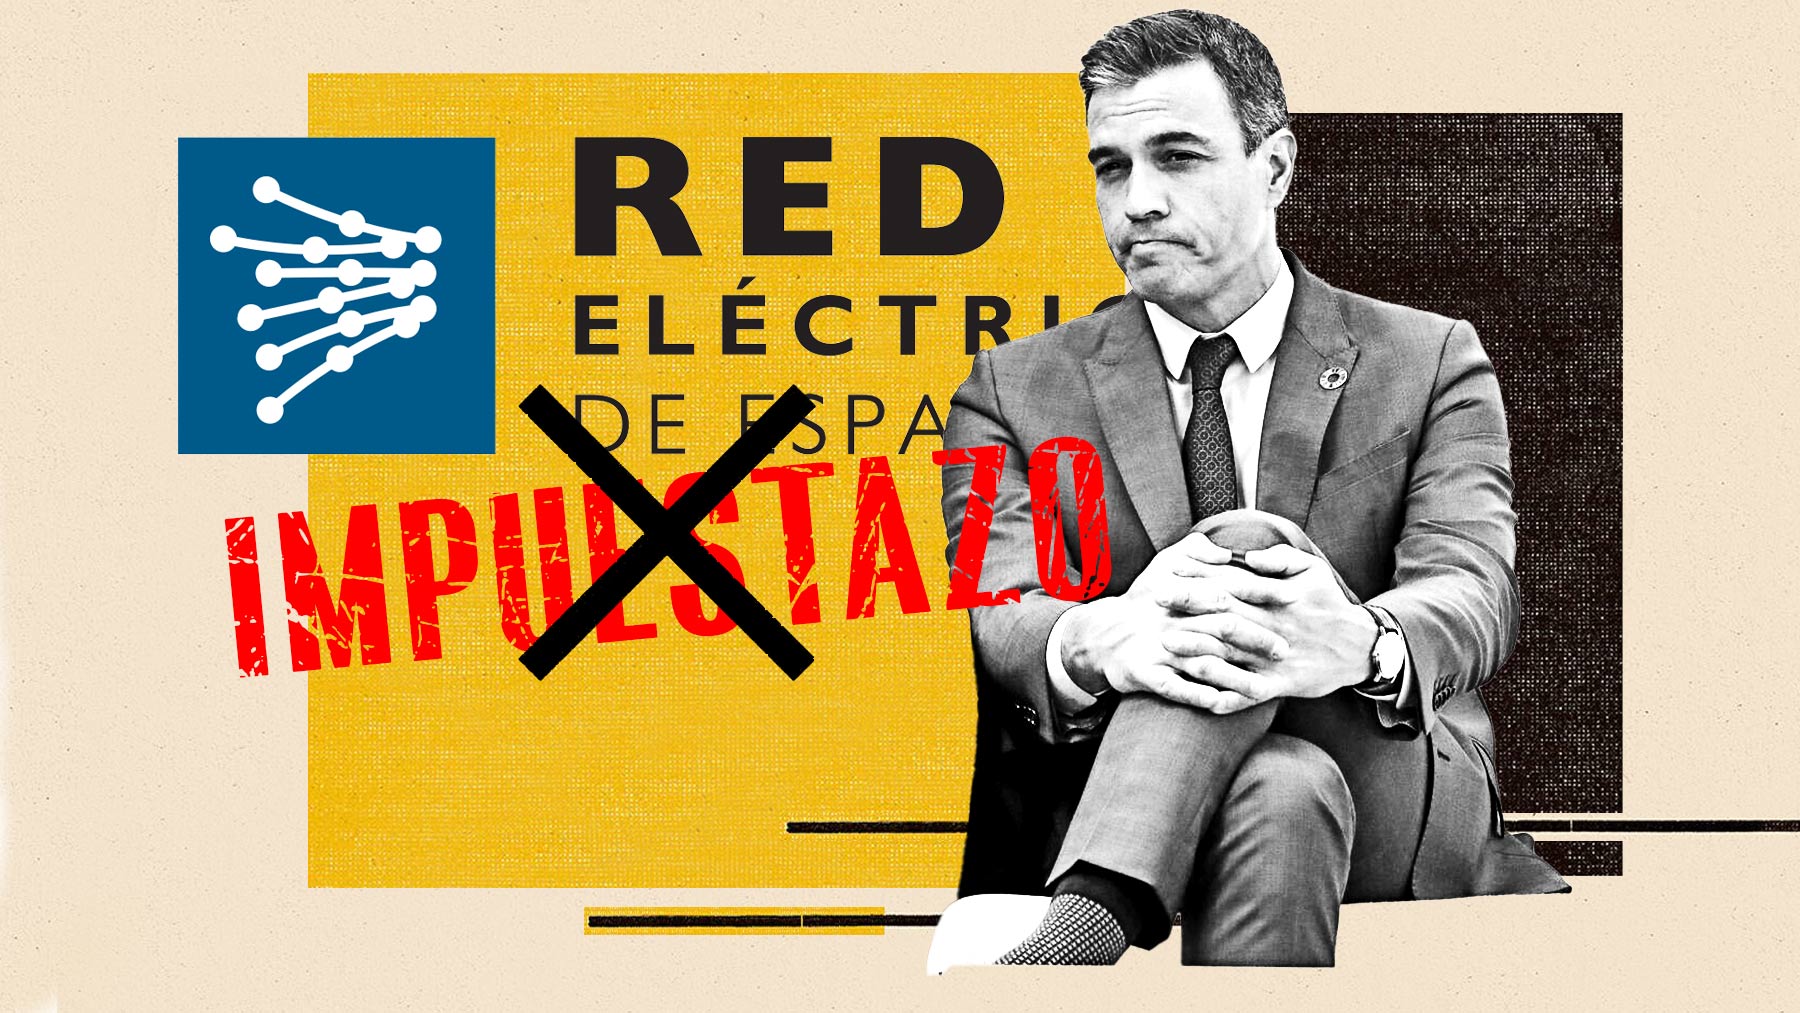 Pedro Sánchez indultó a Red Eléctrica del impuestazo siendo accionista